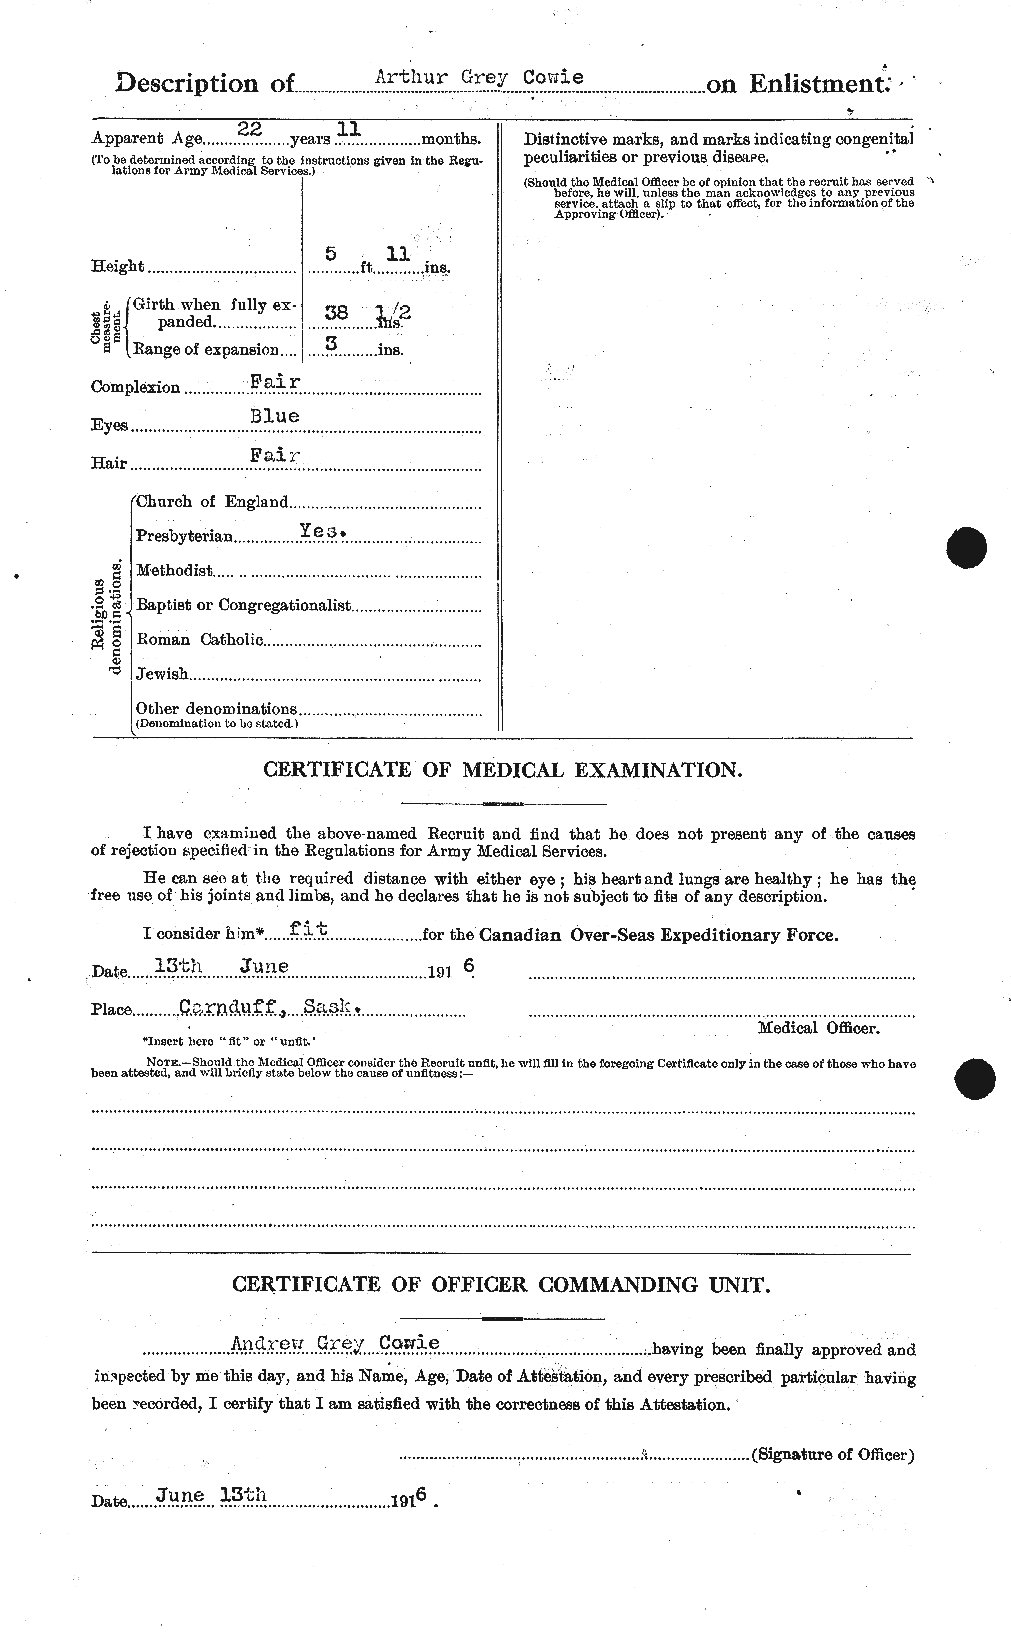 Dossiers du Personnel de la Première Guerre mondiale - CEC 060035b